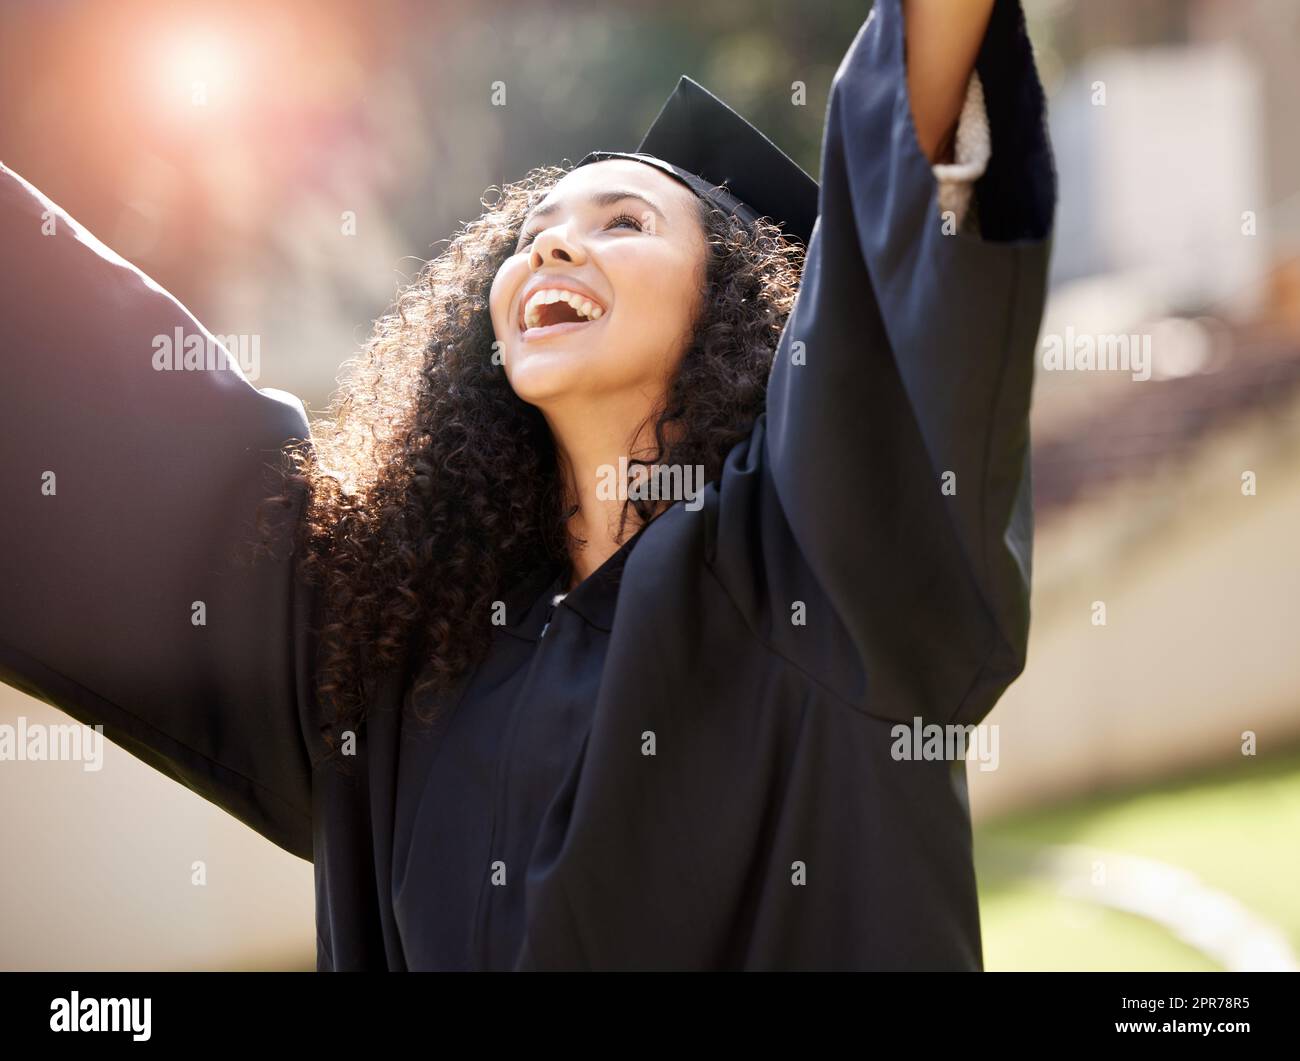 Je vais réaliser tous mes espoirs pour l'avenir. Photo d'une jeune femme qui applaudisse le jour de la remise des diplômes. Banque D'Images